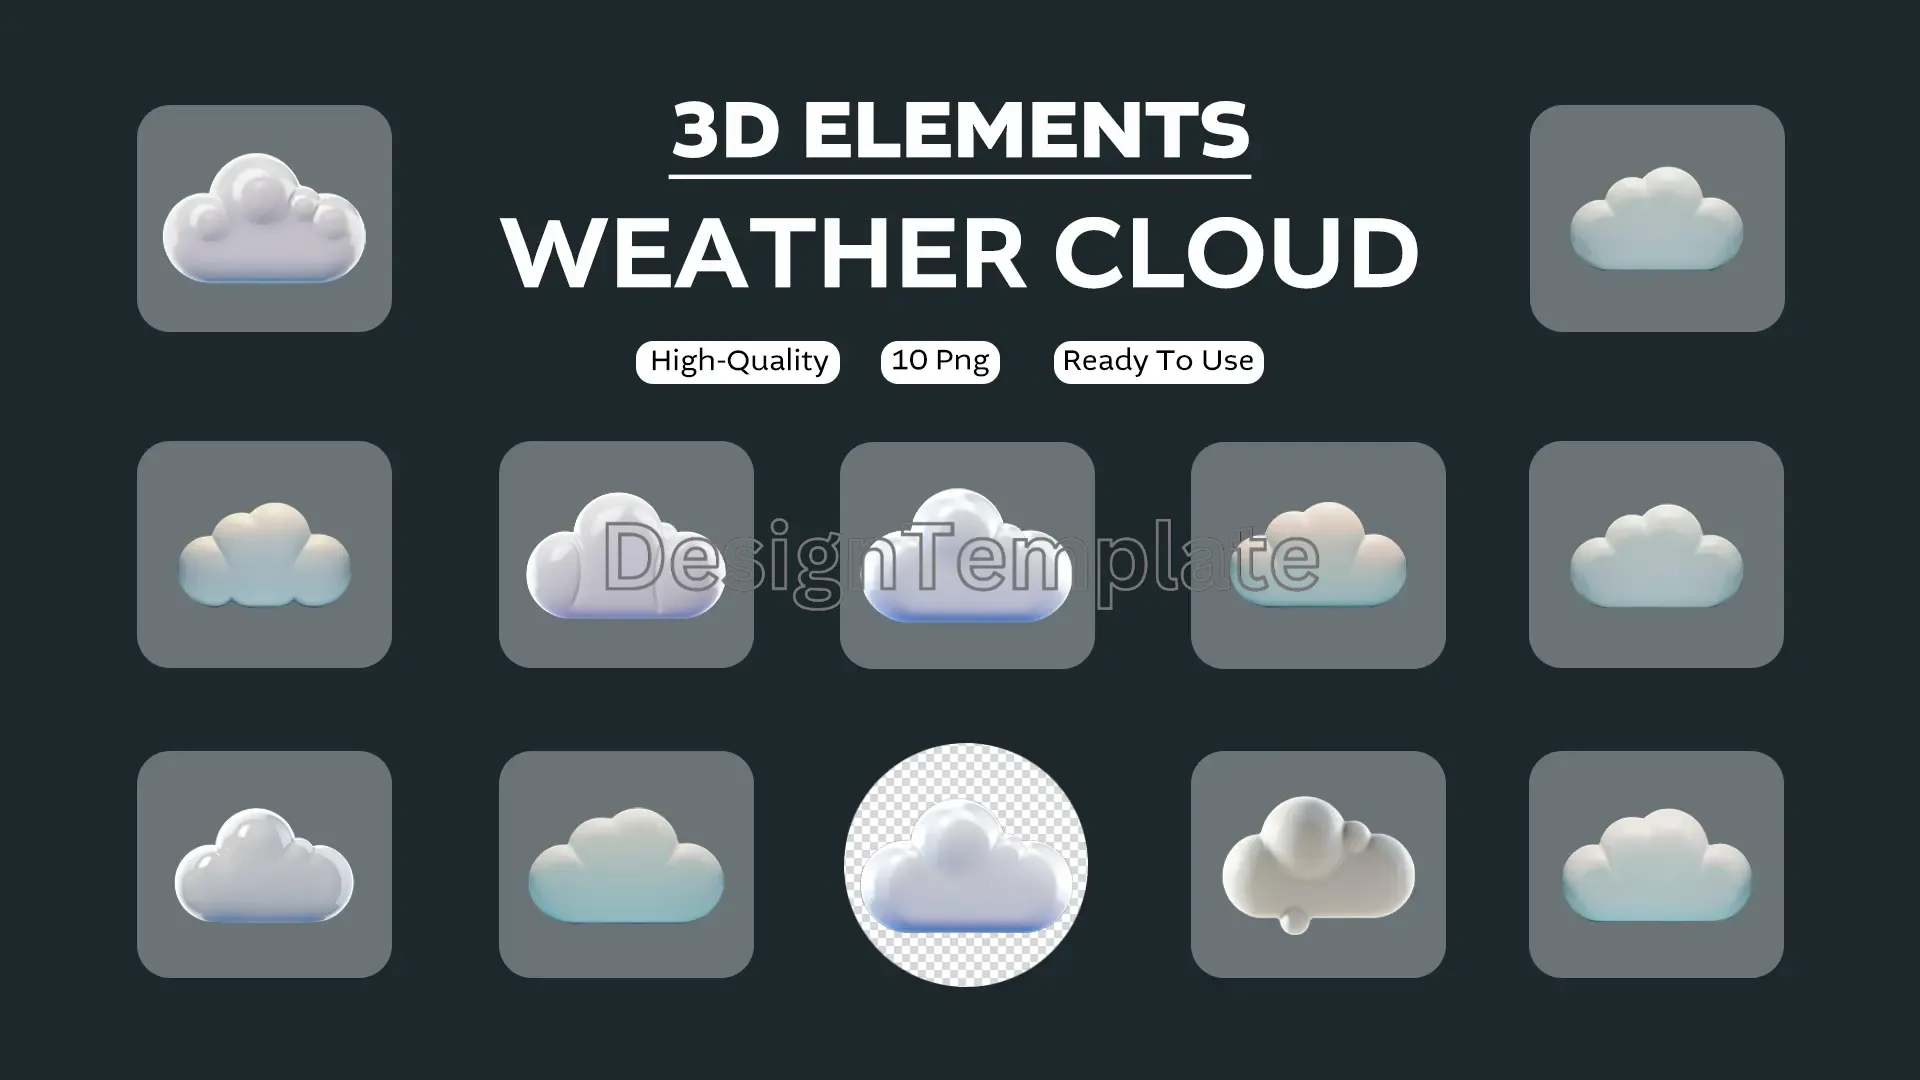 Climates Captured Weather Cloud 3D Elements Collection